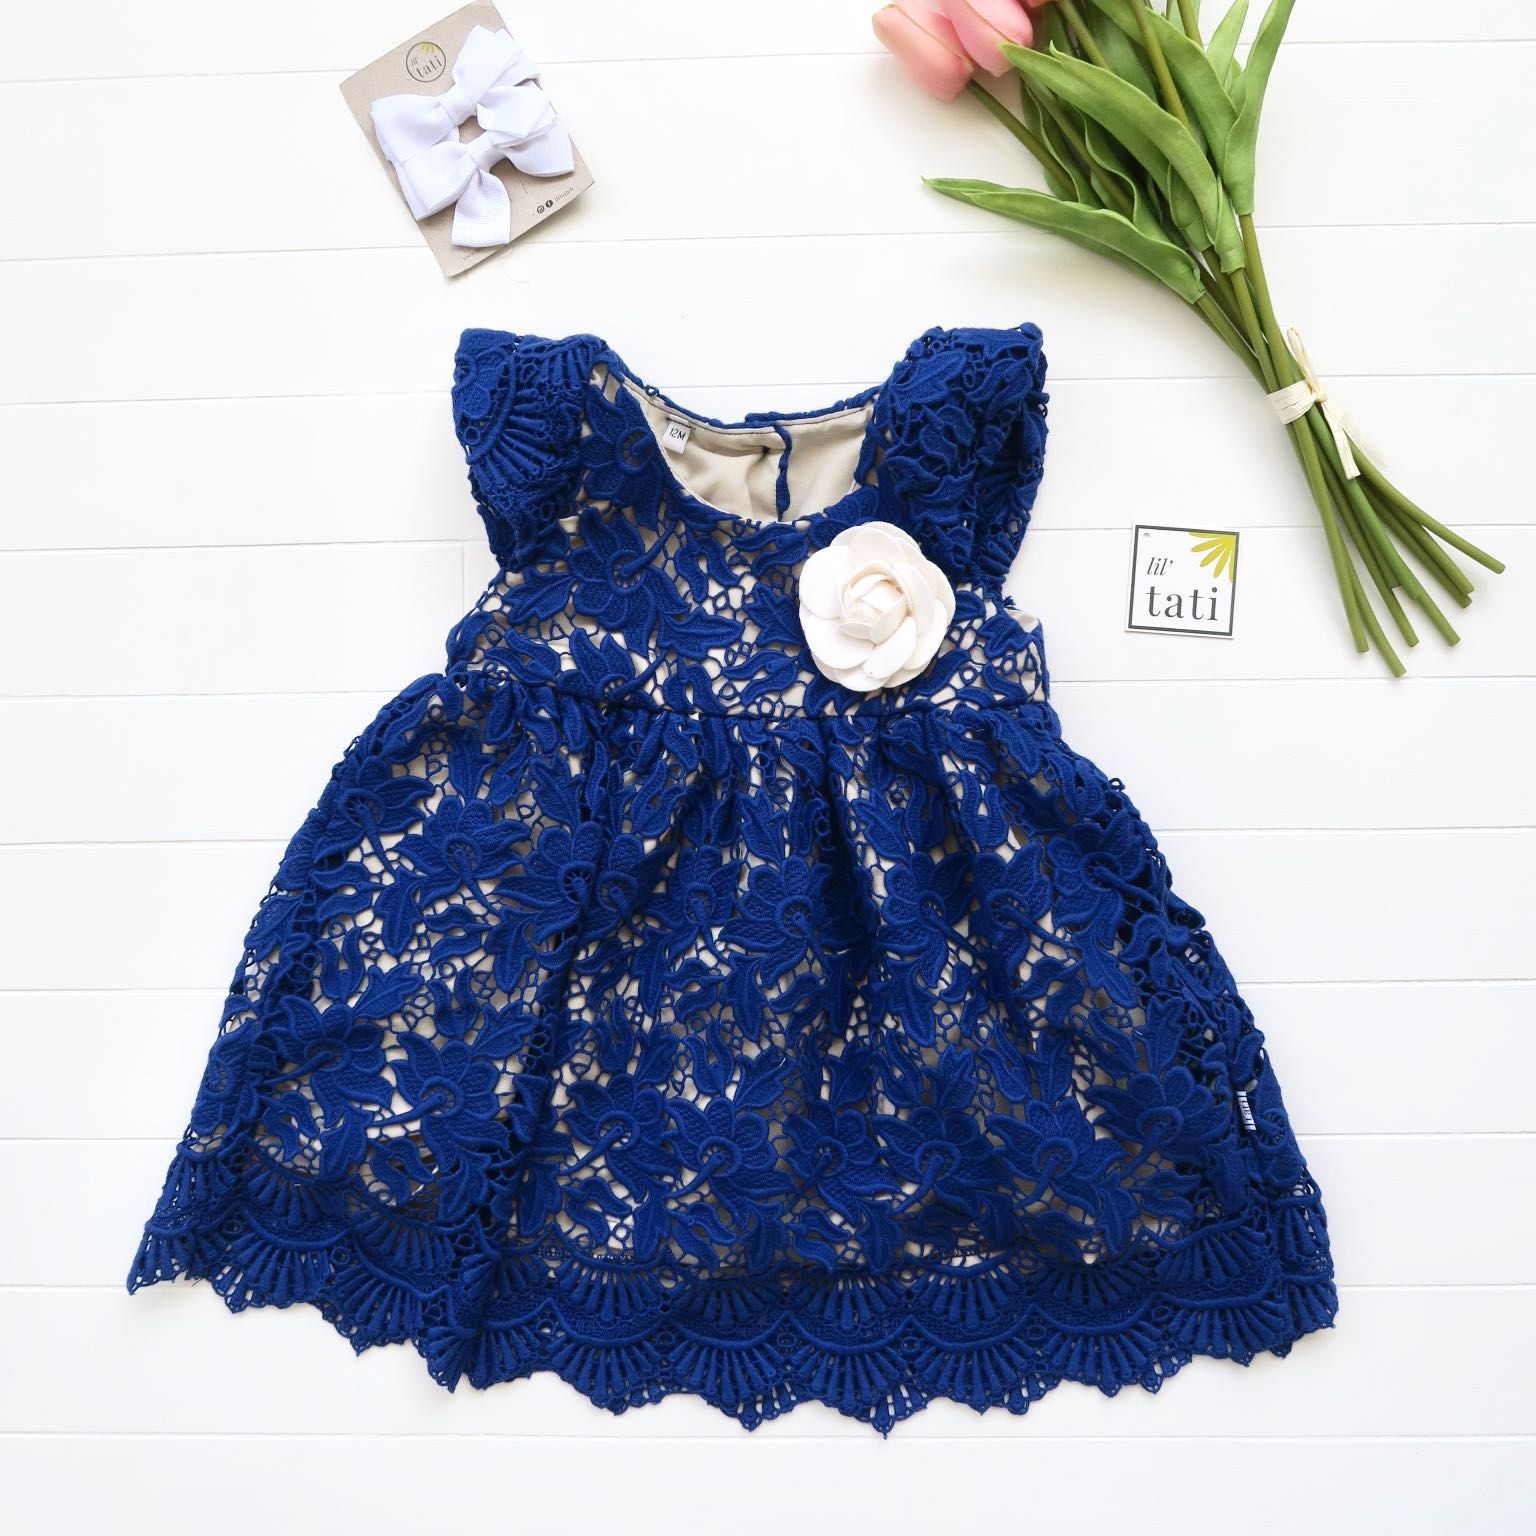 Lotus Dress in Blue Floral Lace - Lil' Tati